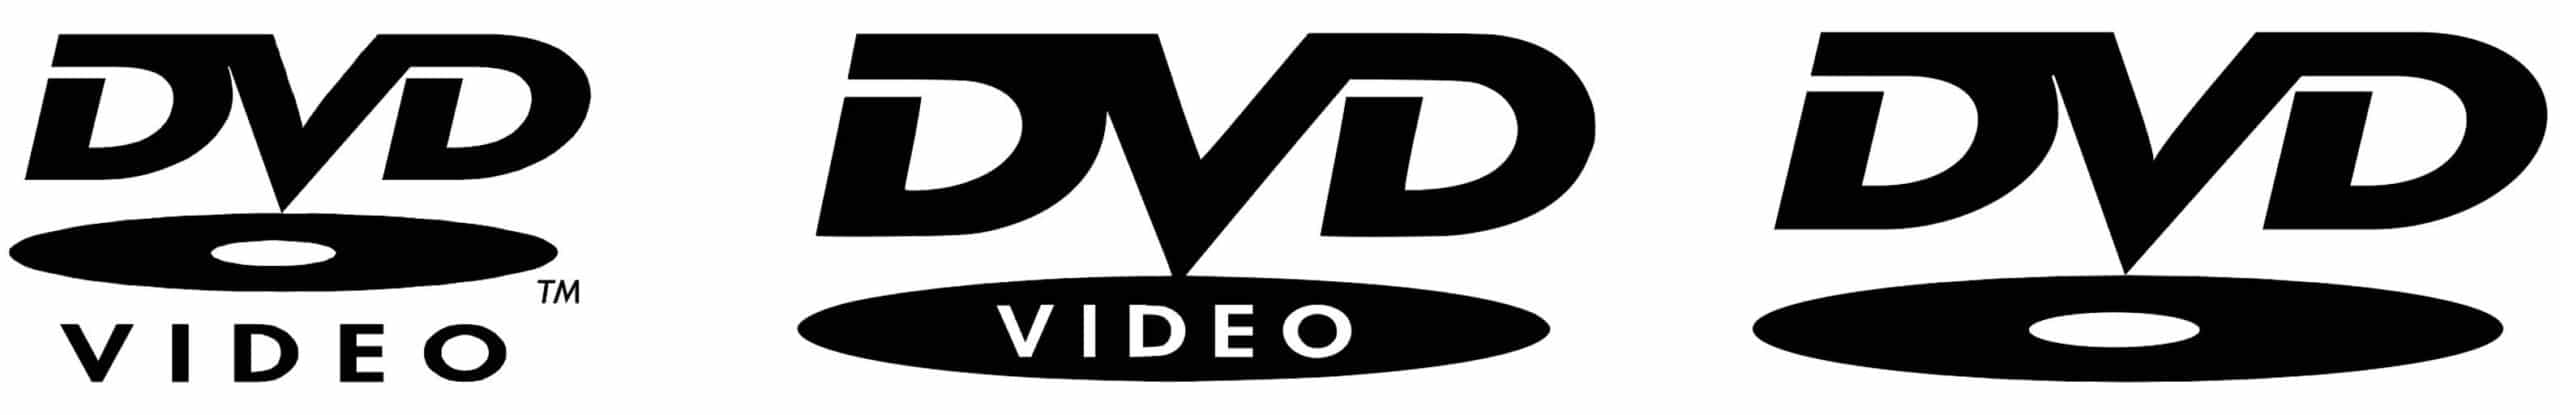 DVD Logo download